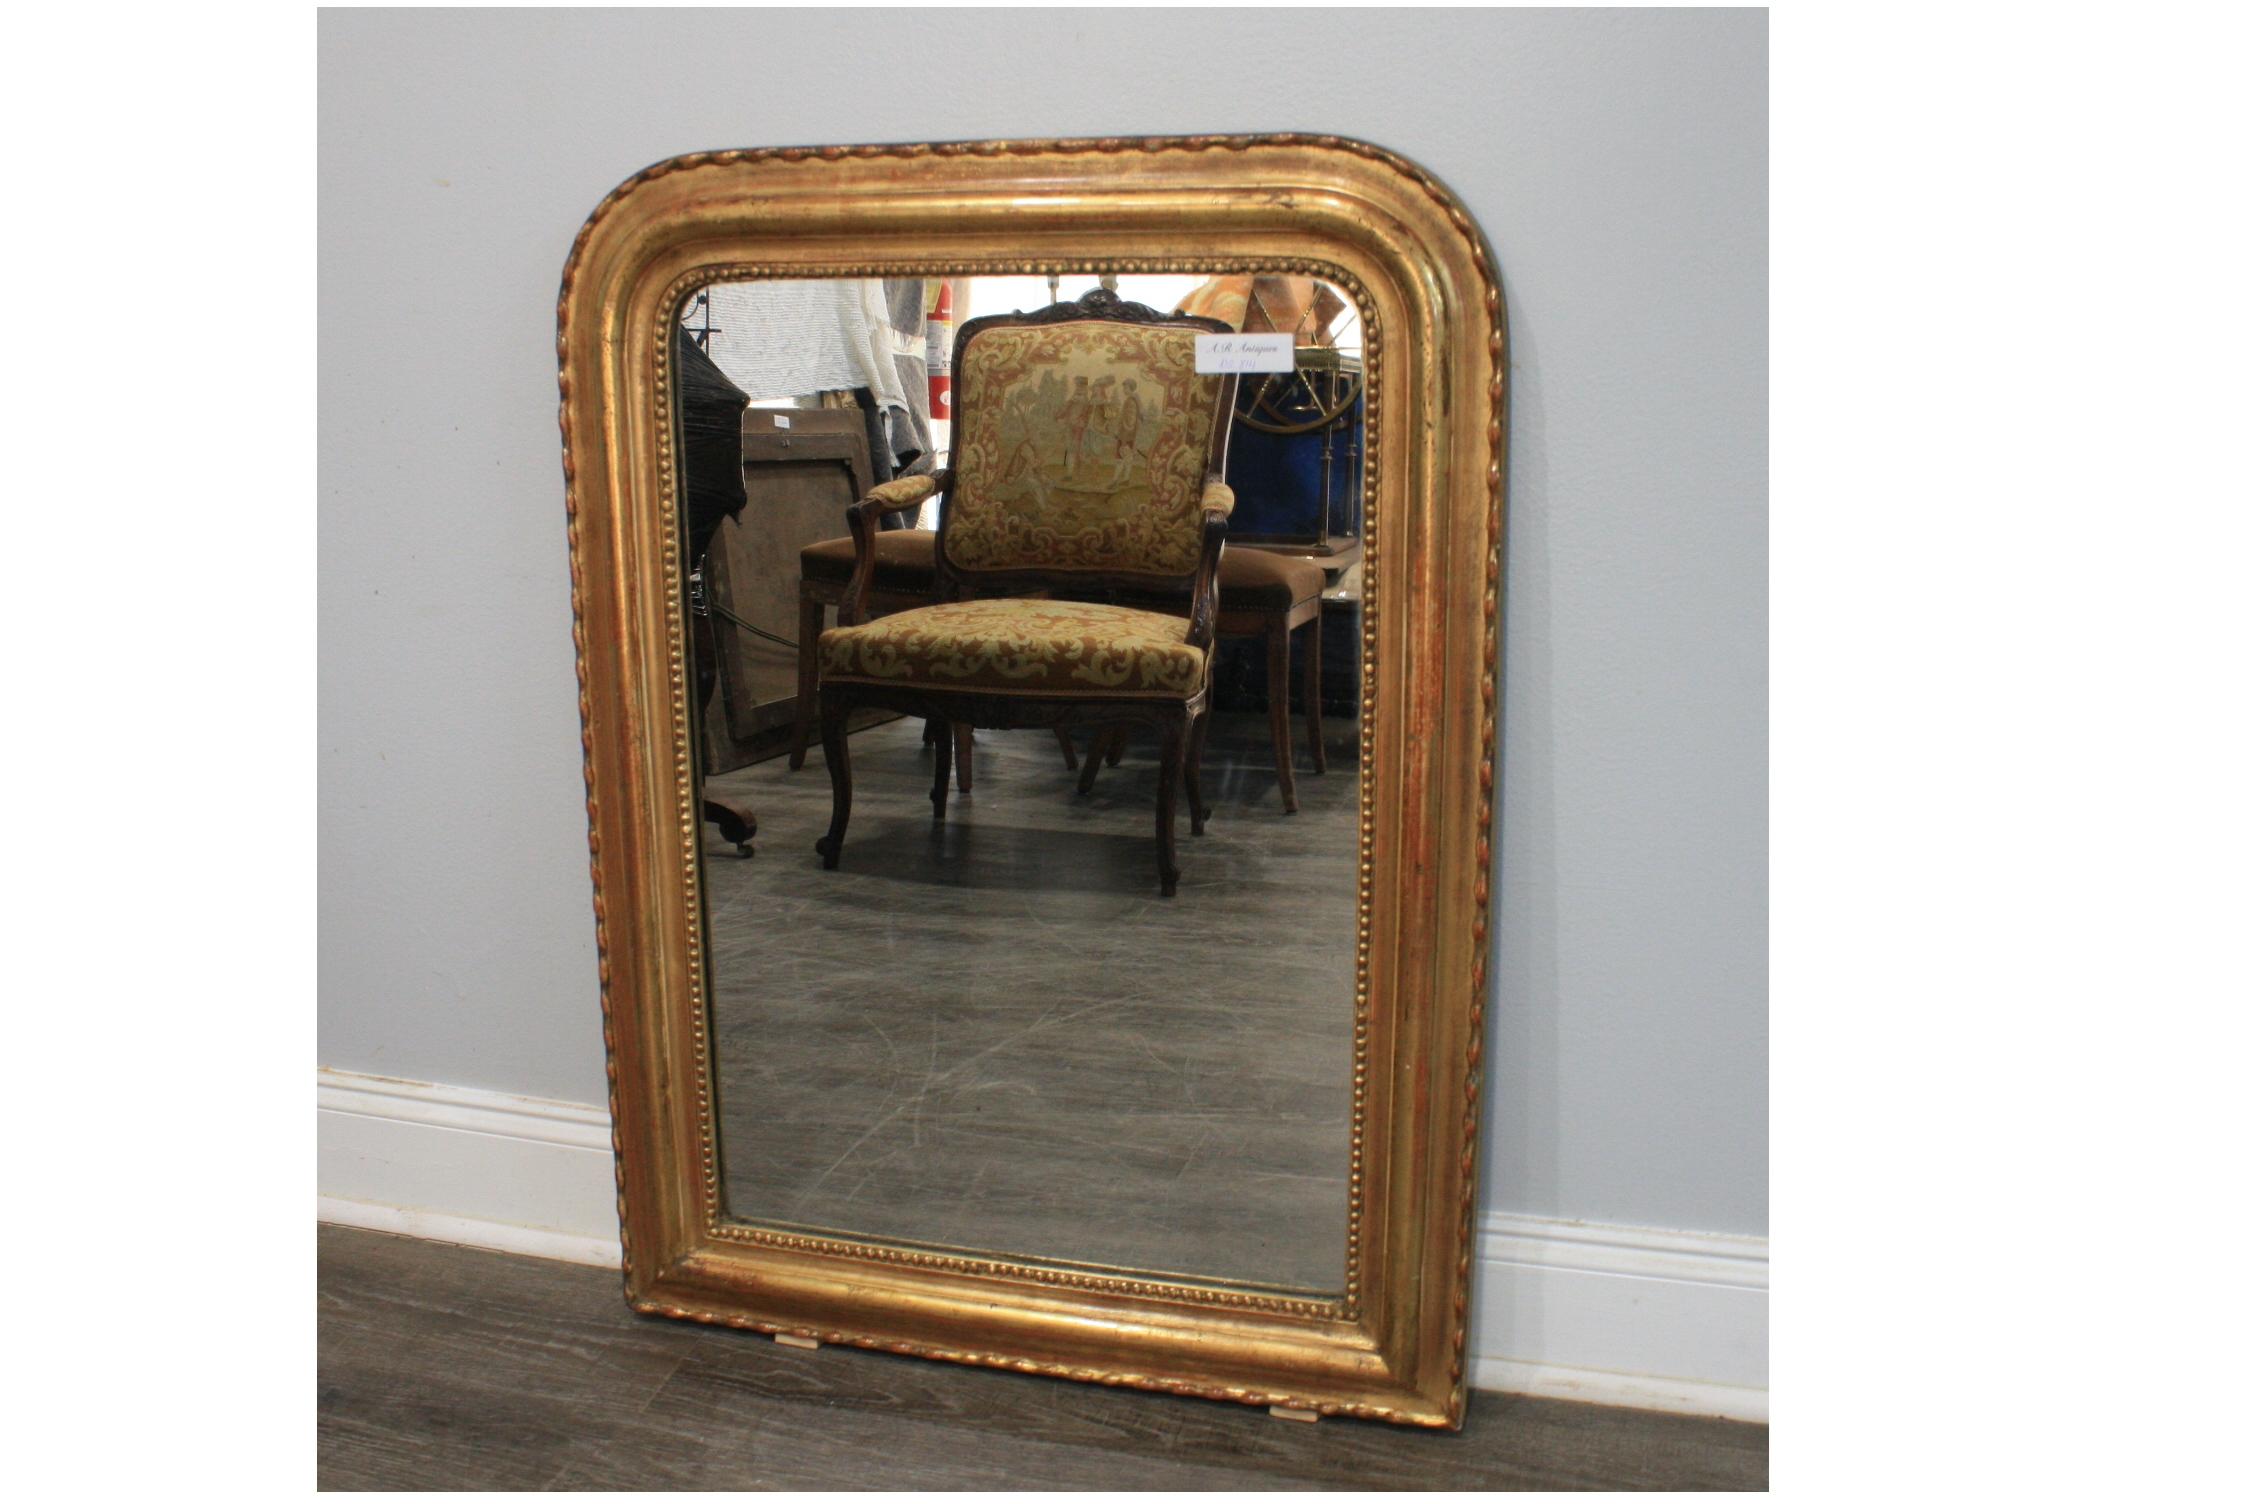 Dieser französische Louis-Philippe-Spiegel aus dem 19. Jahrhundert ist mit Blattgold und einem schlangenförmigen Muster überzogen.